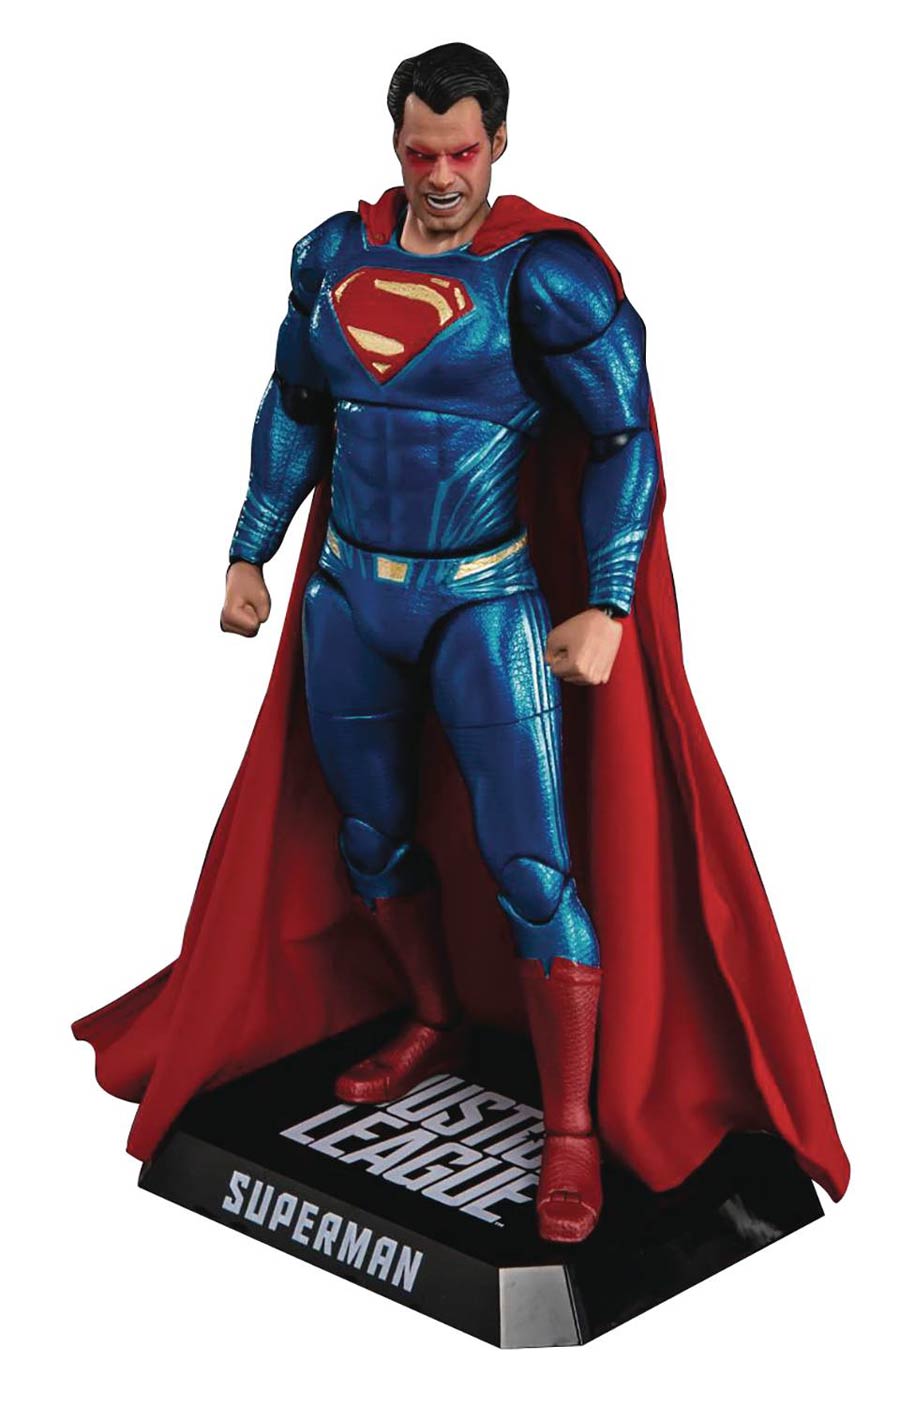 Justice League Movie DAH-013 Dynamic 8ction Heroes Previews Exclusive Action Figure - Superman